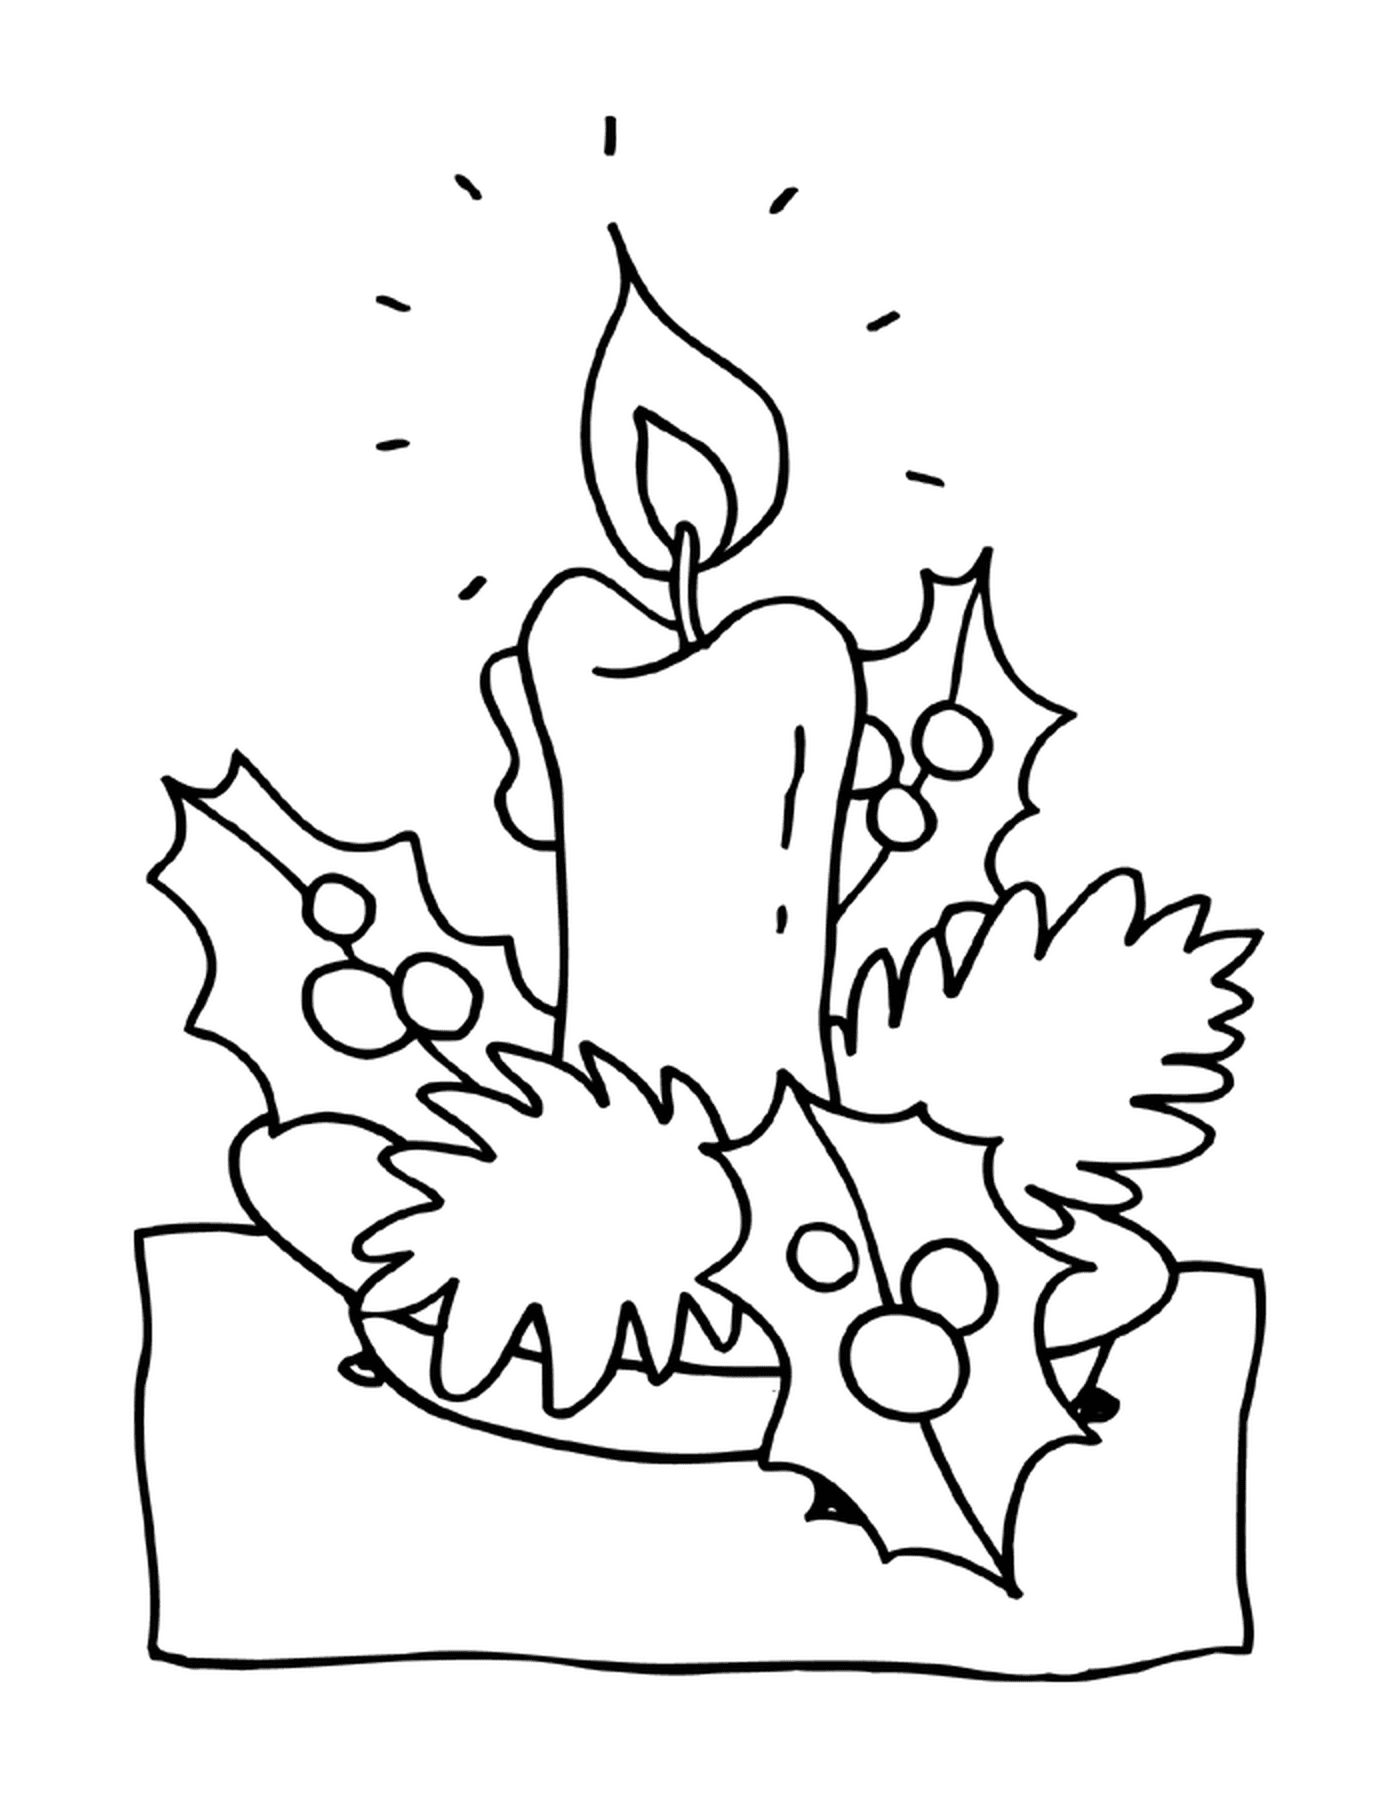  Uma vela 